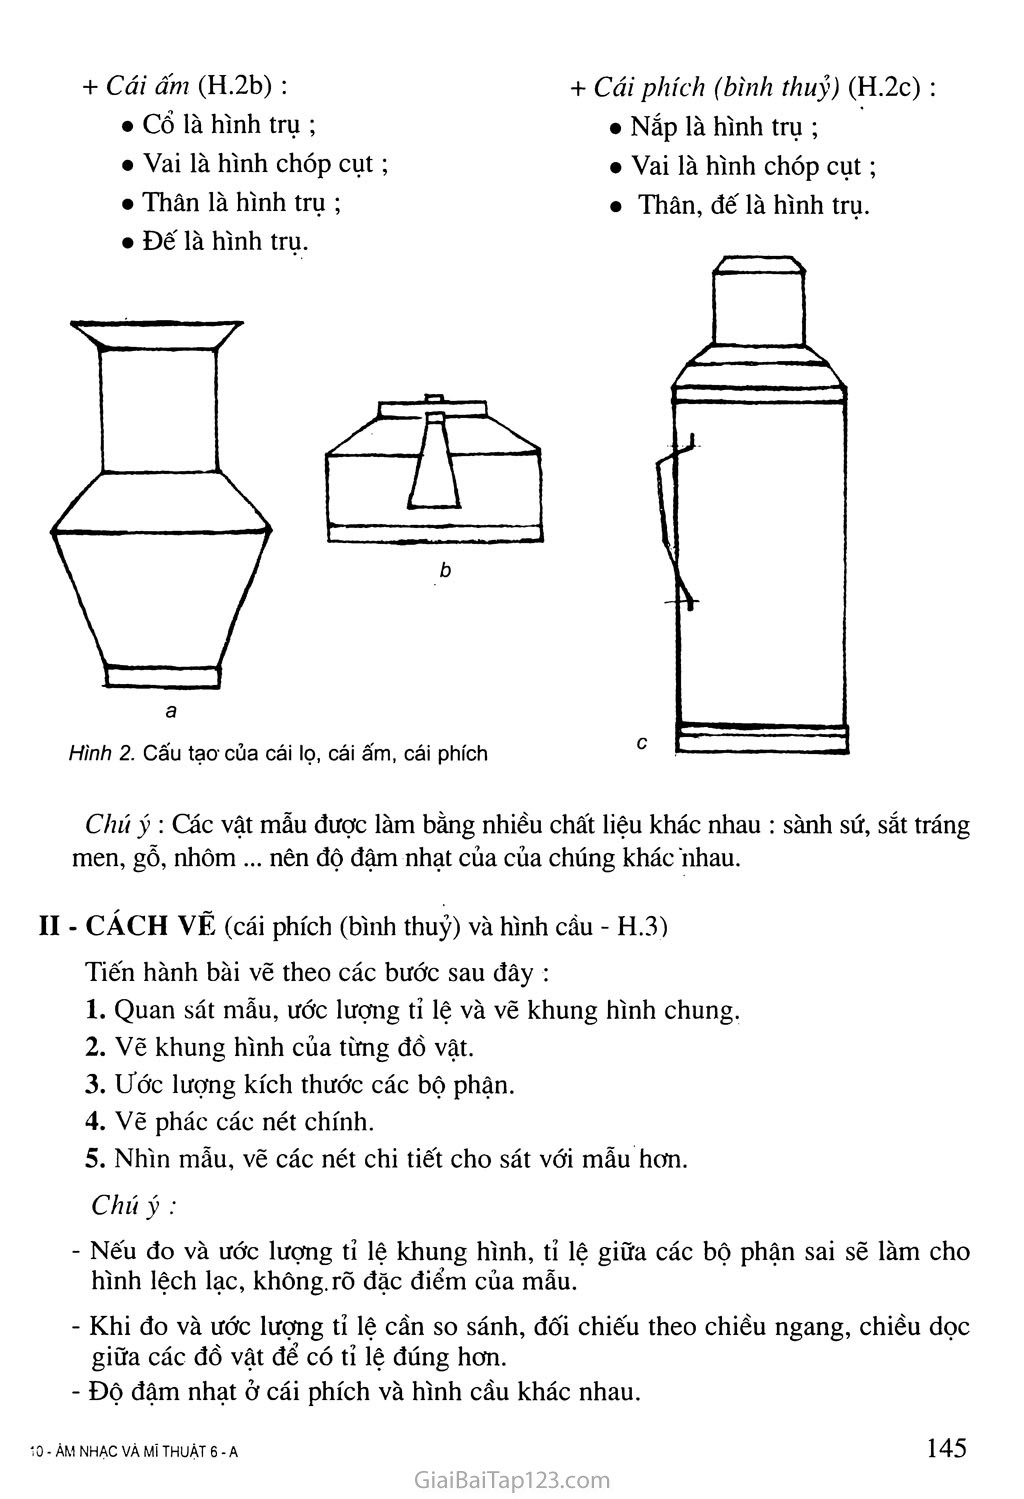 CÁCH VẼ PHÍCH NƯỚC ĐƠN GIẢN  VẼ THEO NHẠC  How to draw thermos water  bottles step by step  YouTube